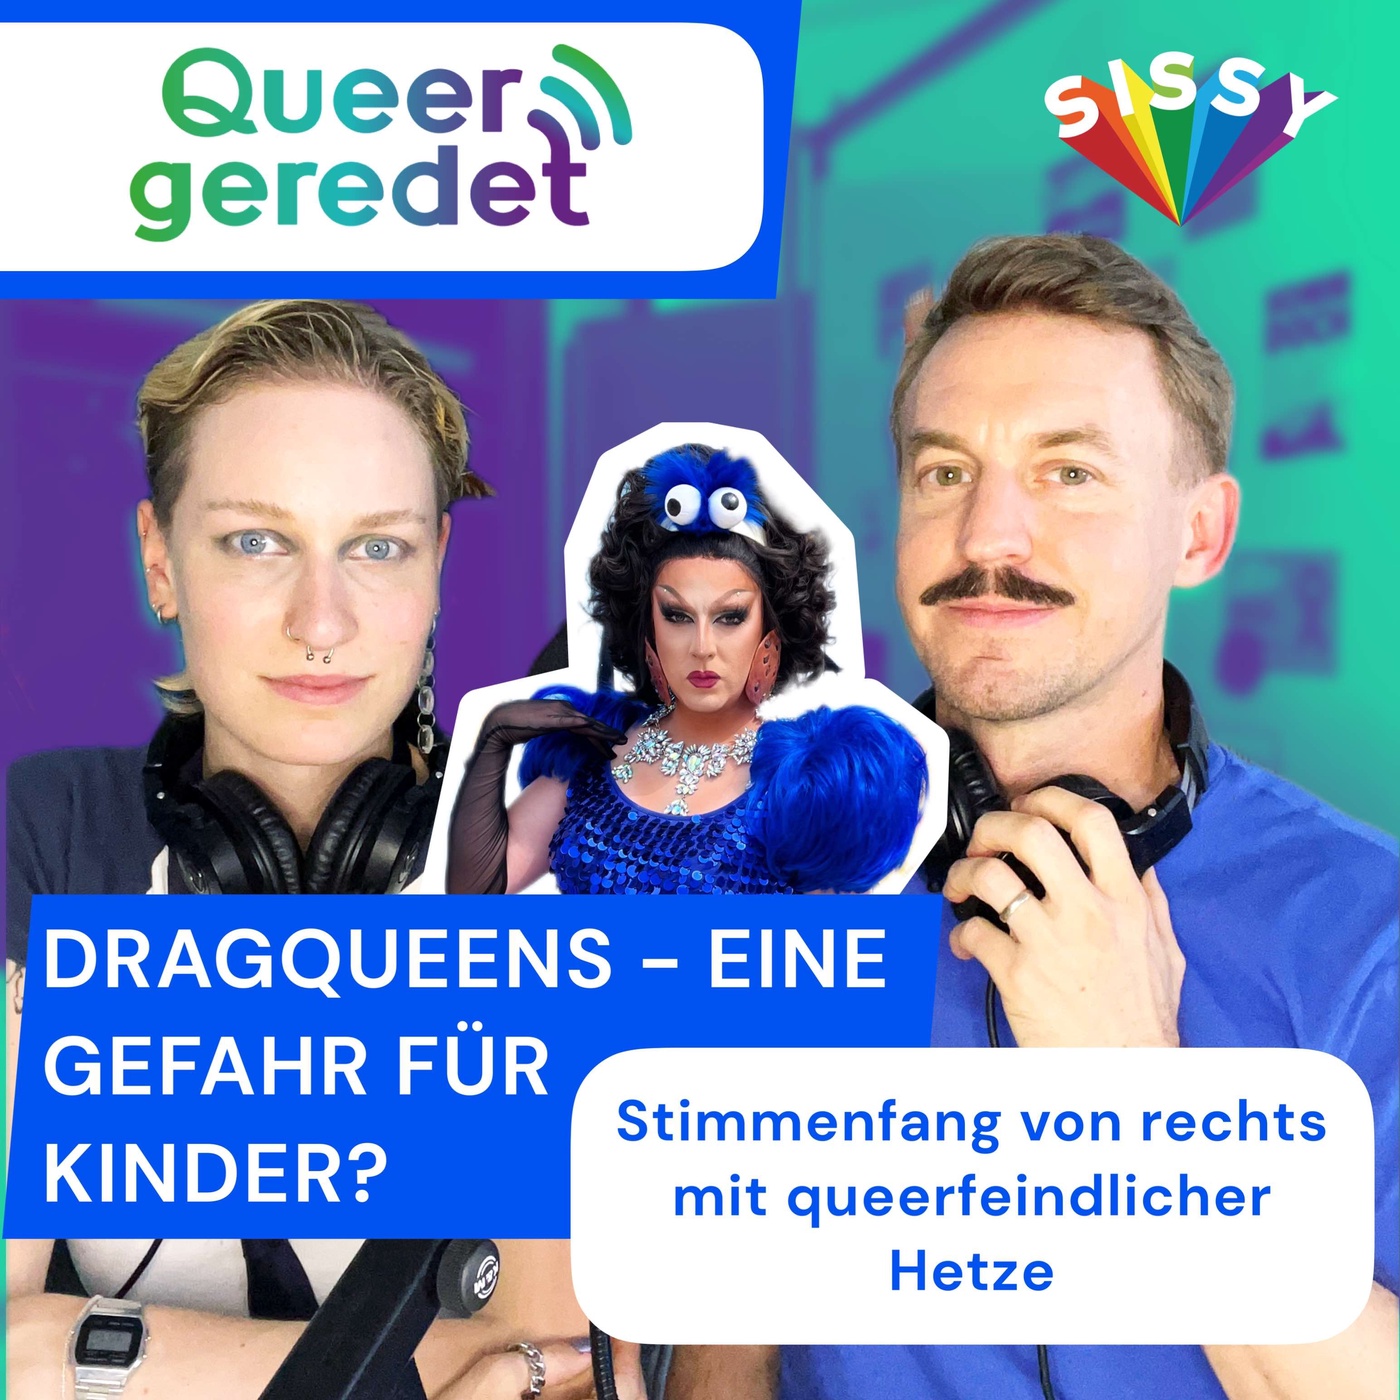 08: Dragqueens - eine Gefahr für Kinder? Stimmenfang von rechts mit queerfeindlicher Hetze.